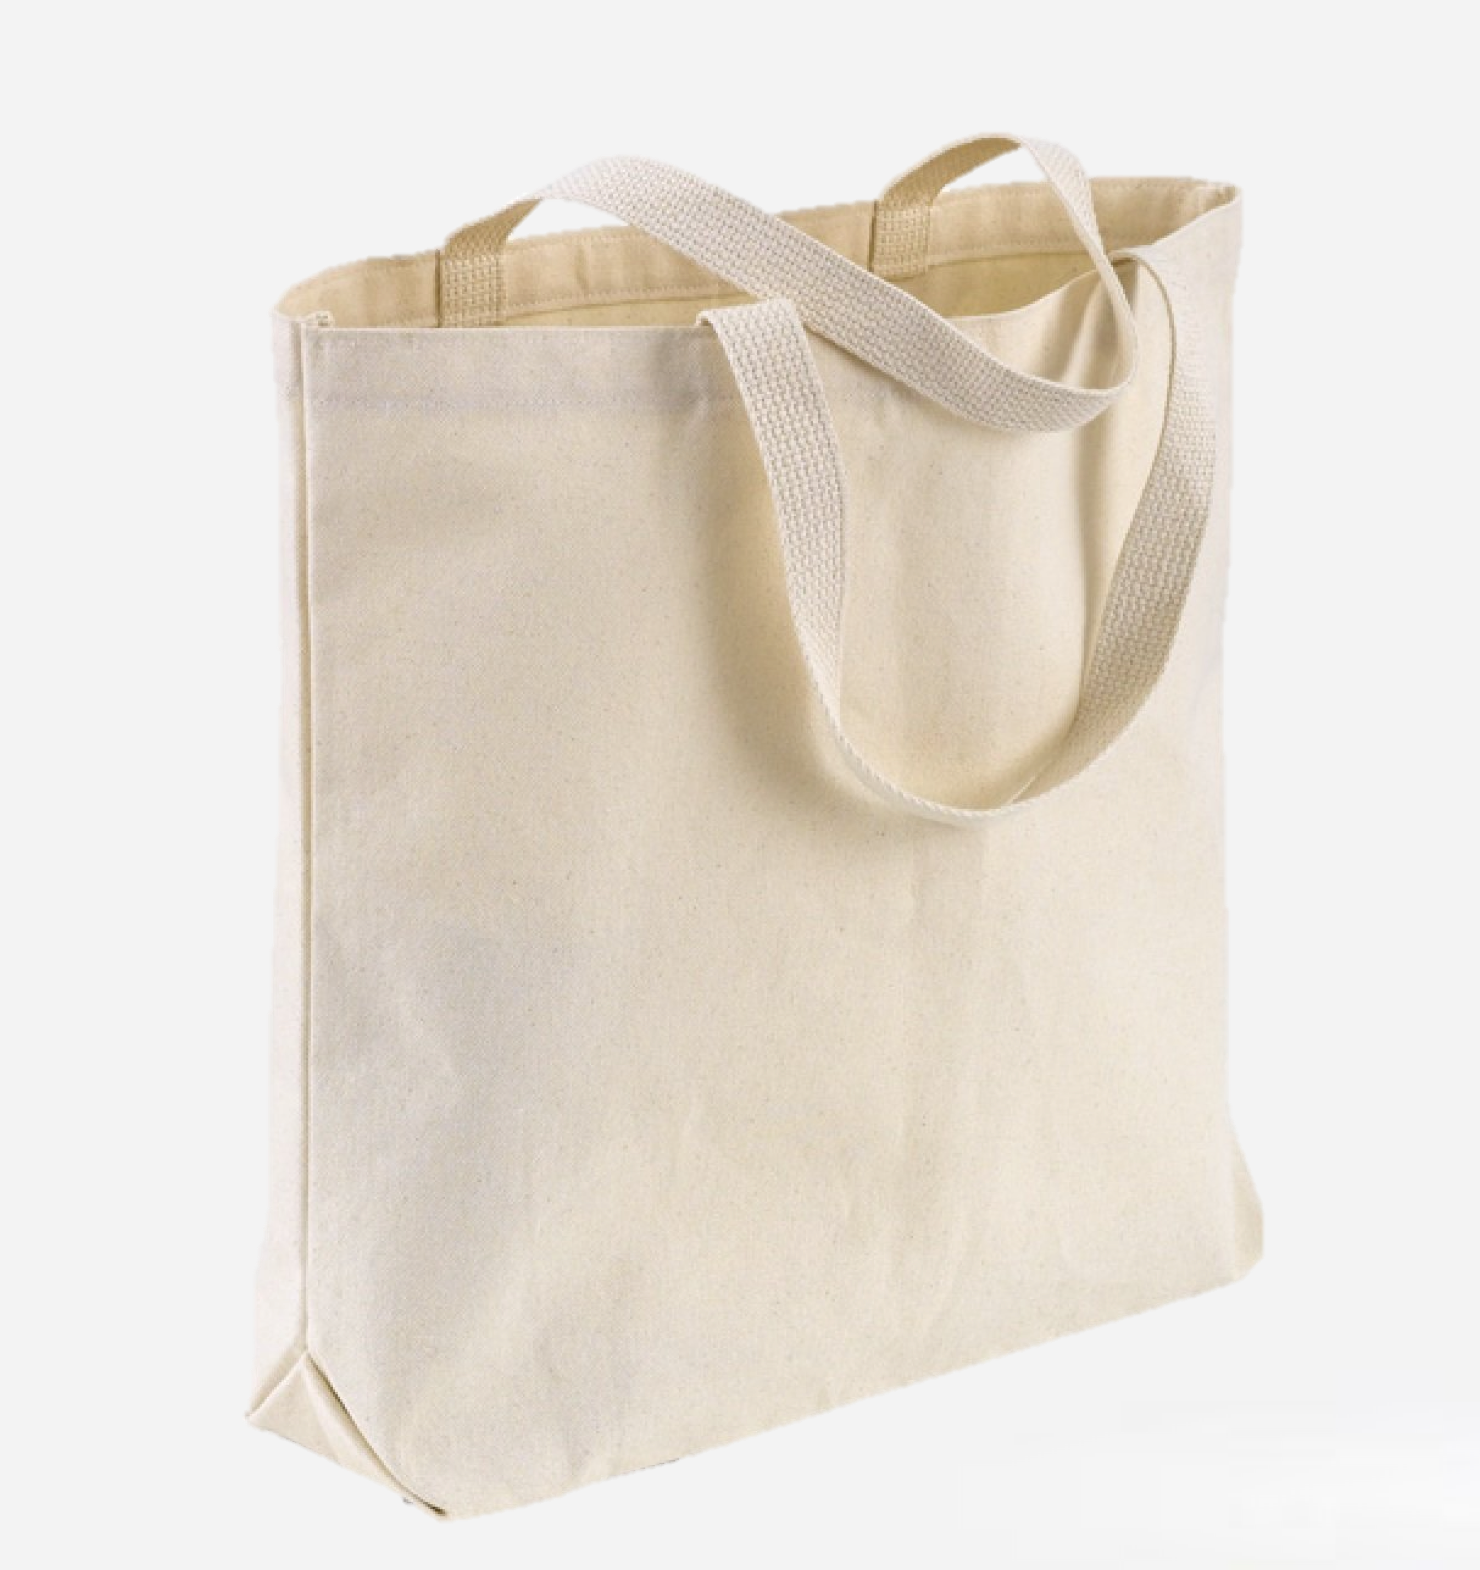 Promotional Personalized Blank Plain Cotton Canvas Bags Reusable